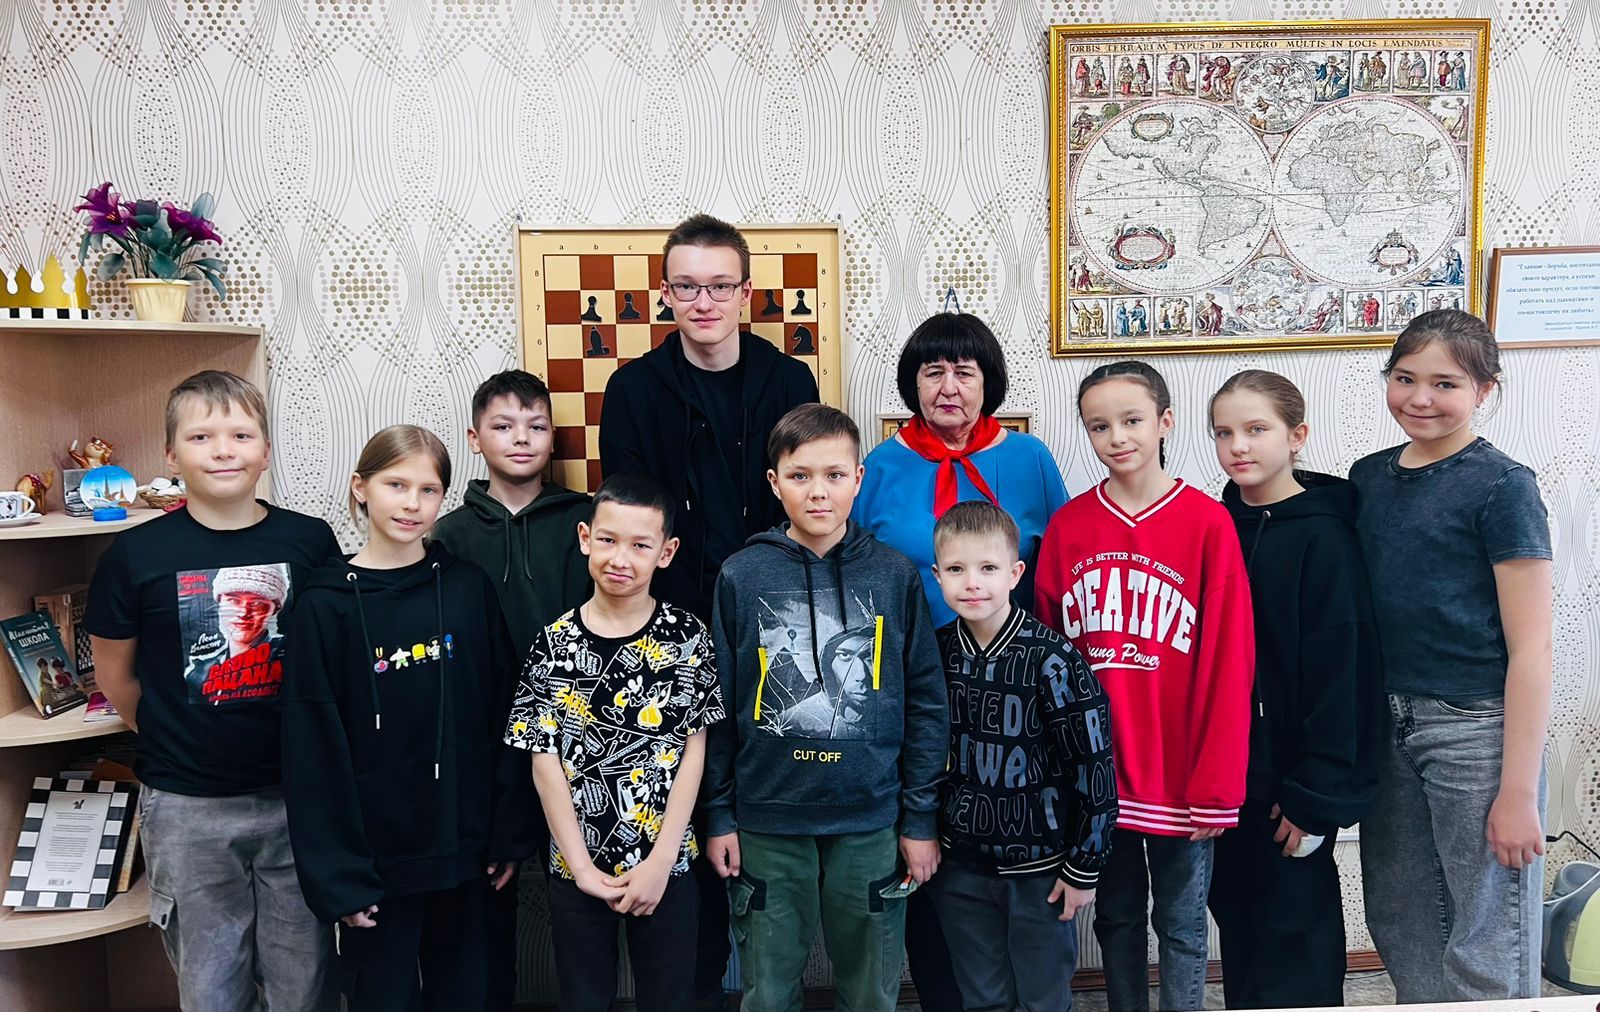 В шахматном клубе «Дебют» города Нурлат ученик 8 класса провел сеанс одновременной игры